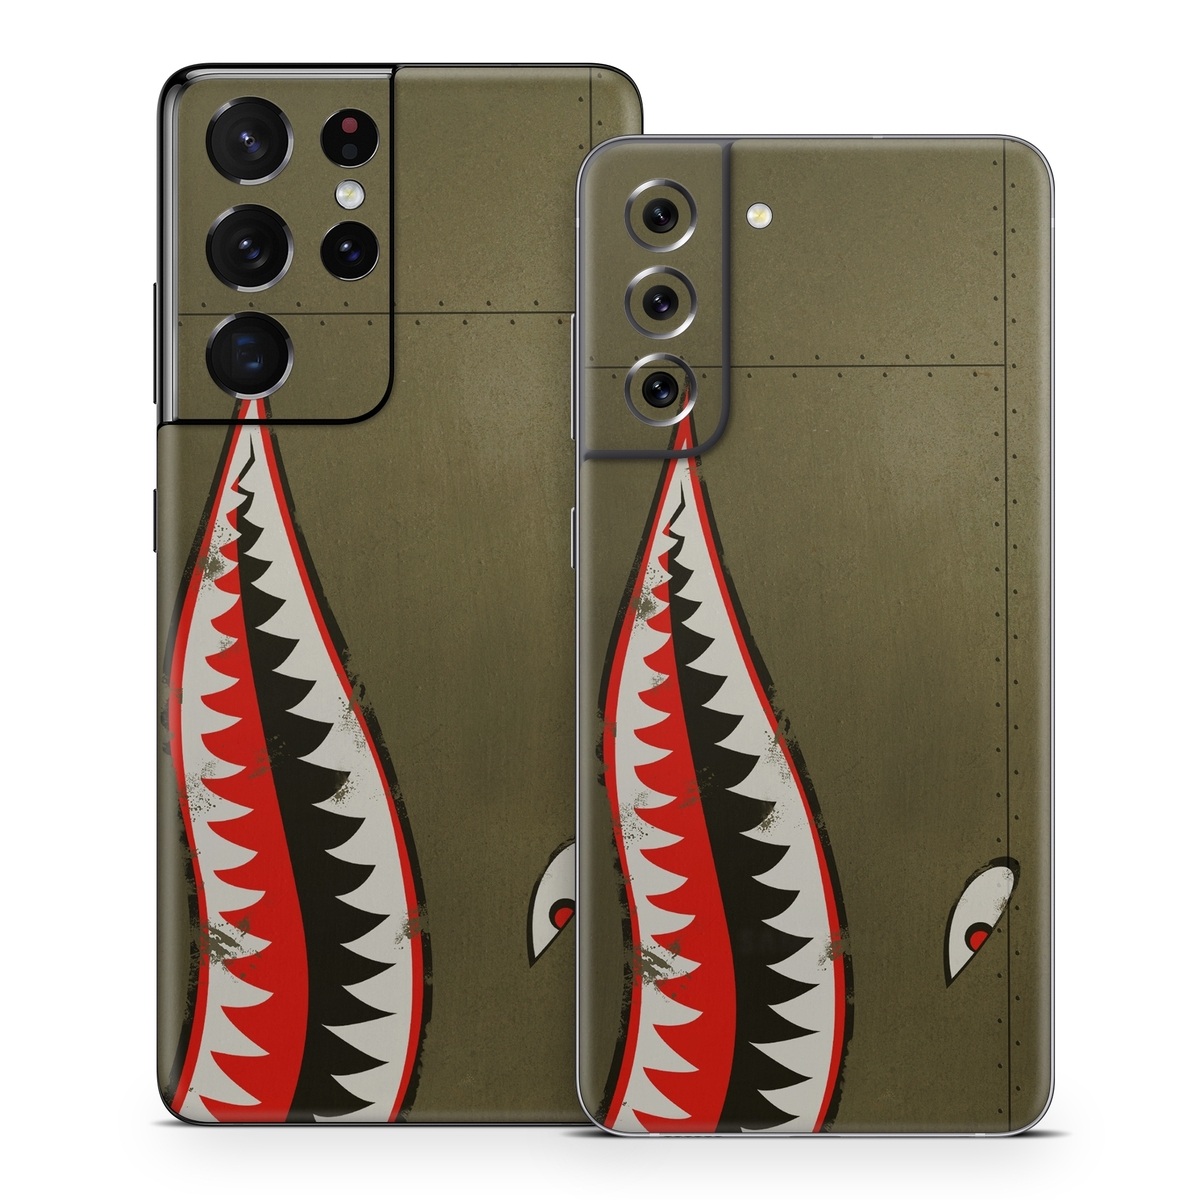 Samsung Galaxy S21 Skin - USAF Shark (Image 1)